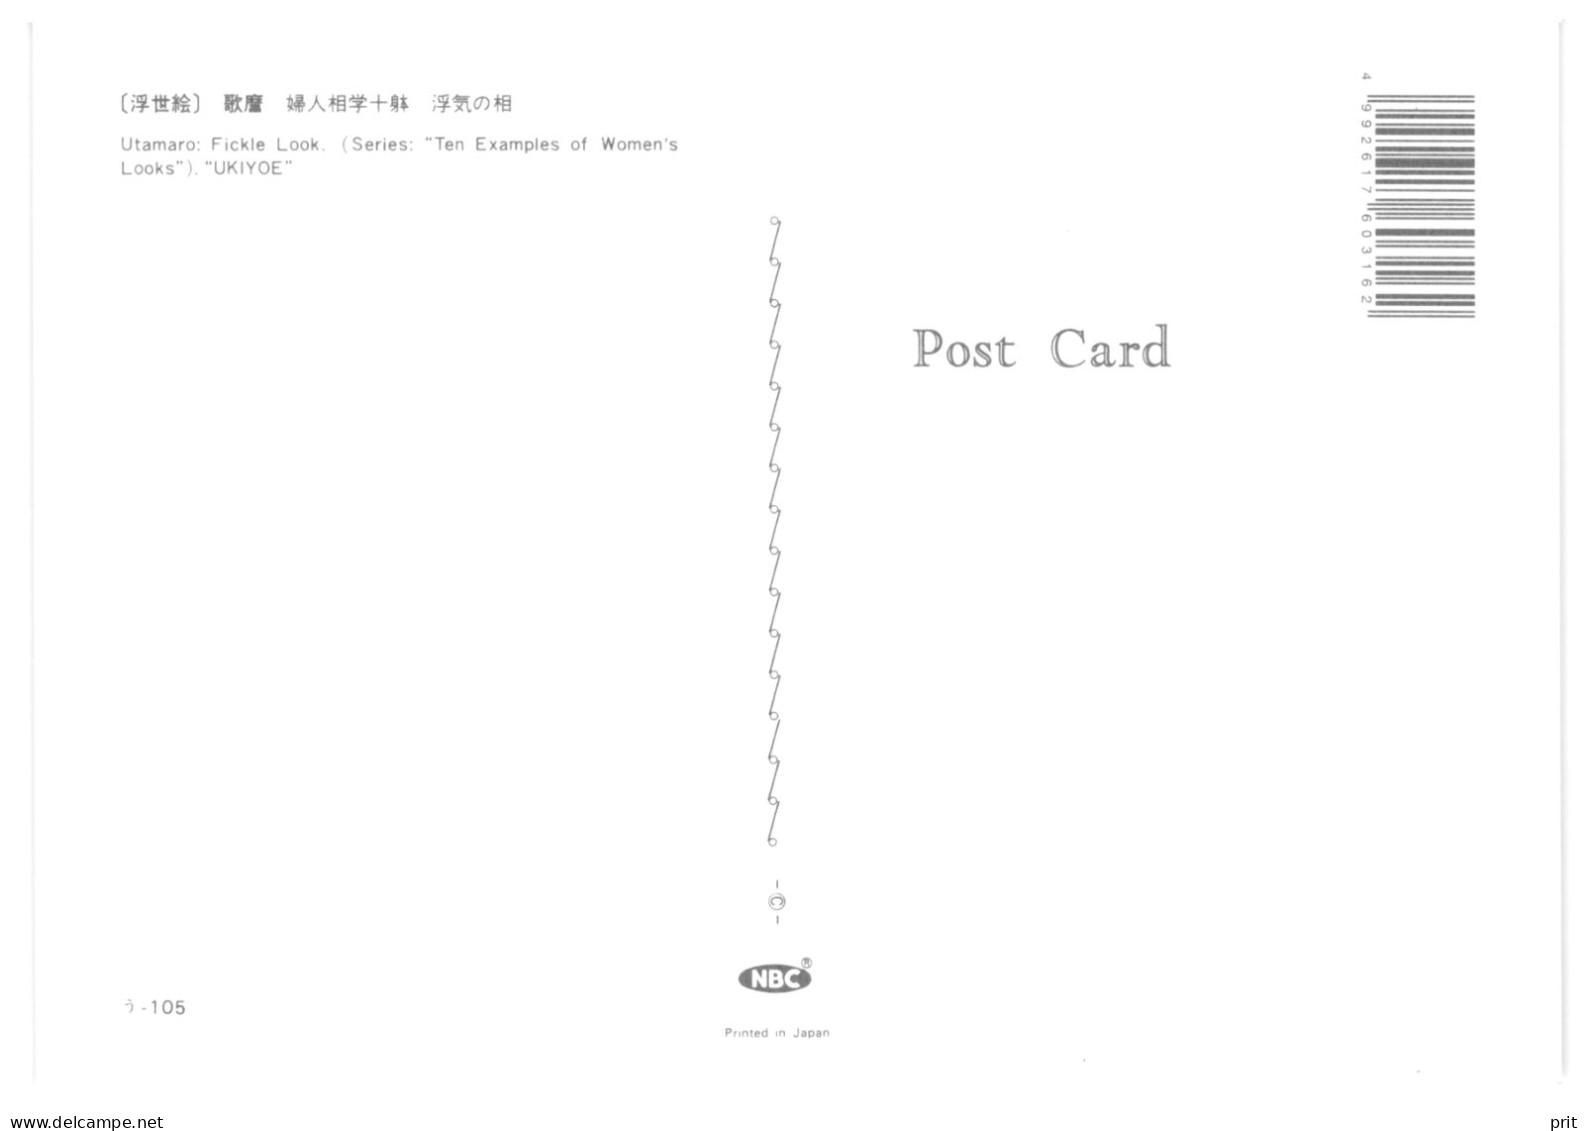 Utamaro Fickle Look, UKIYOE, Ten Examples Of Women's Looks. Unused Postcard. Publisher NBC, Japan - Paintings